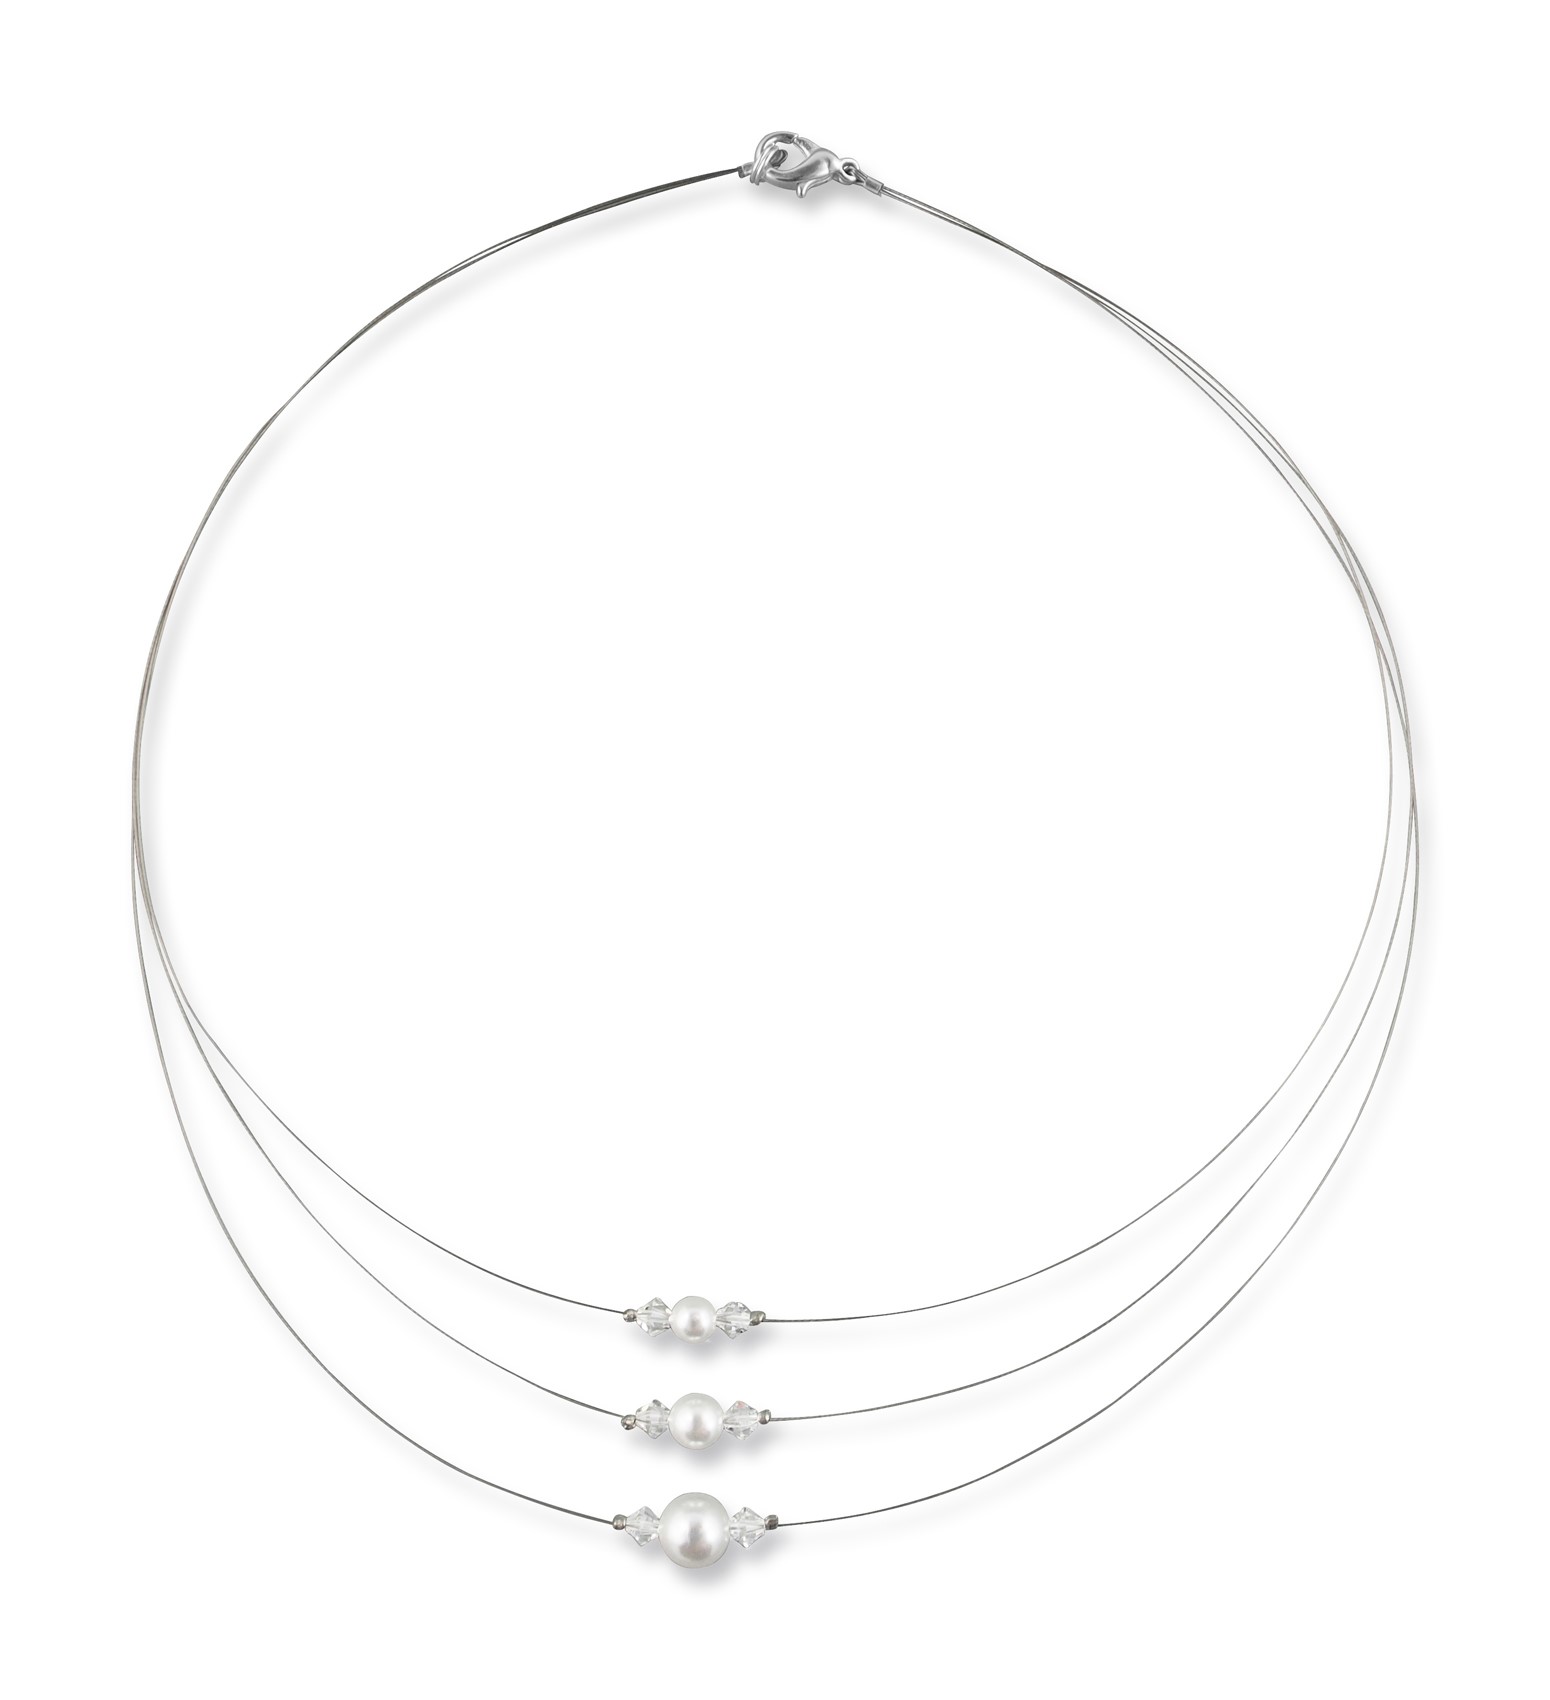 Bild von Mehrreihige Perlenkette Sophie 925 Silber